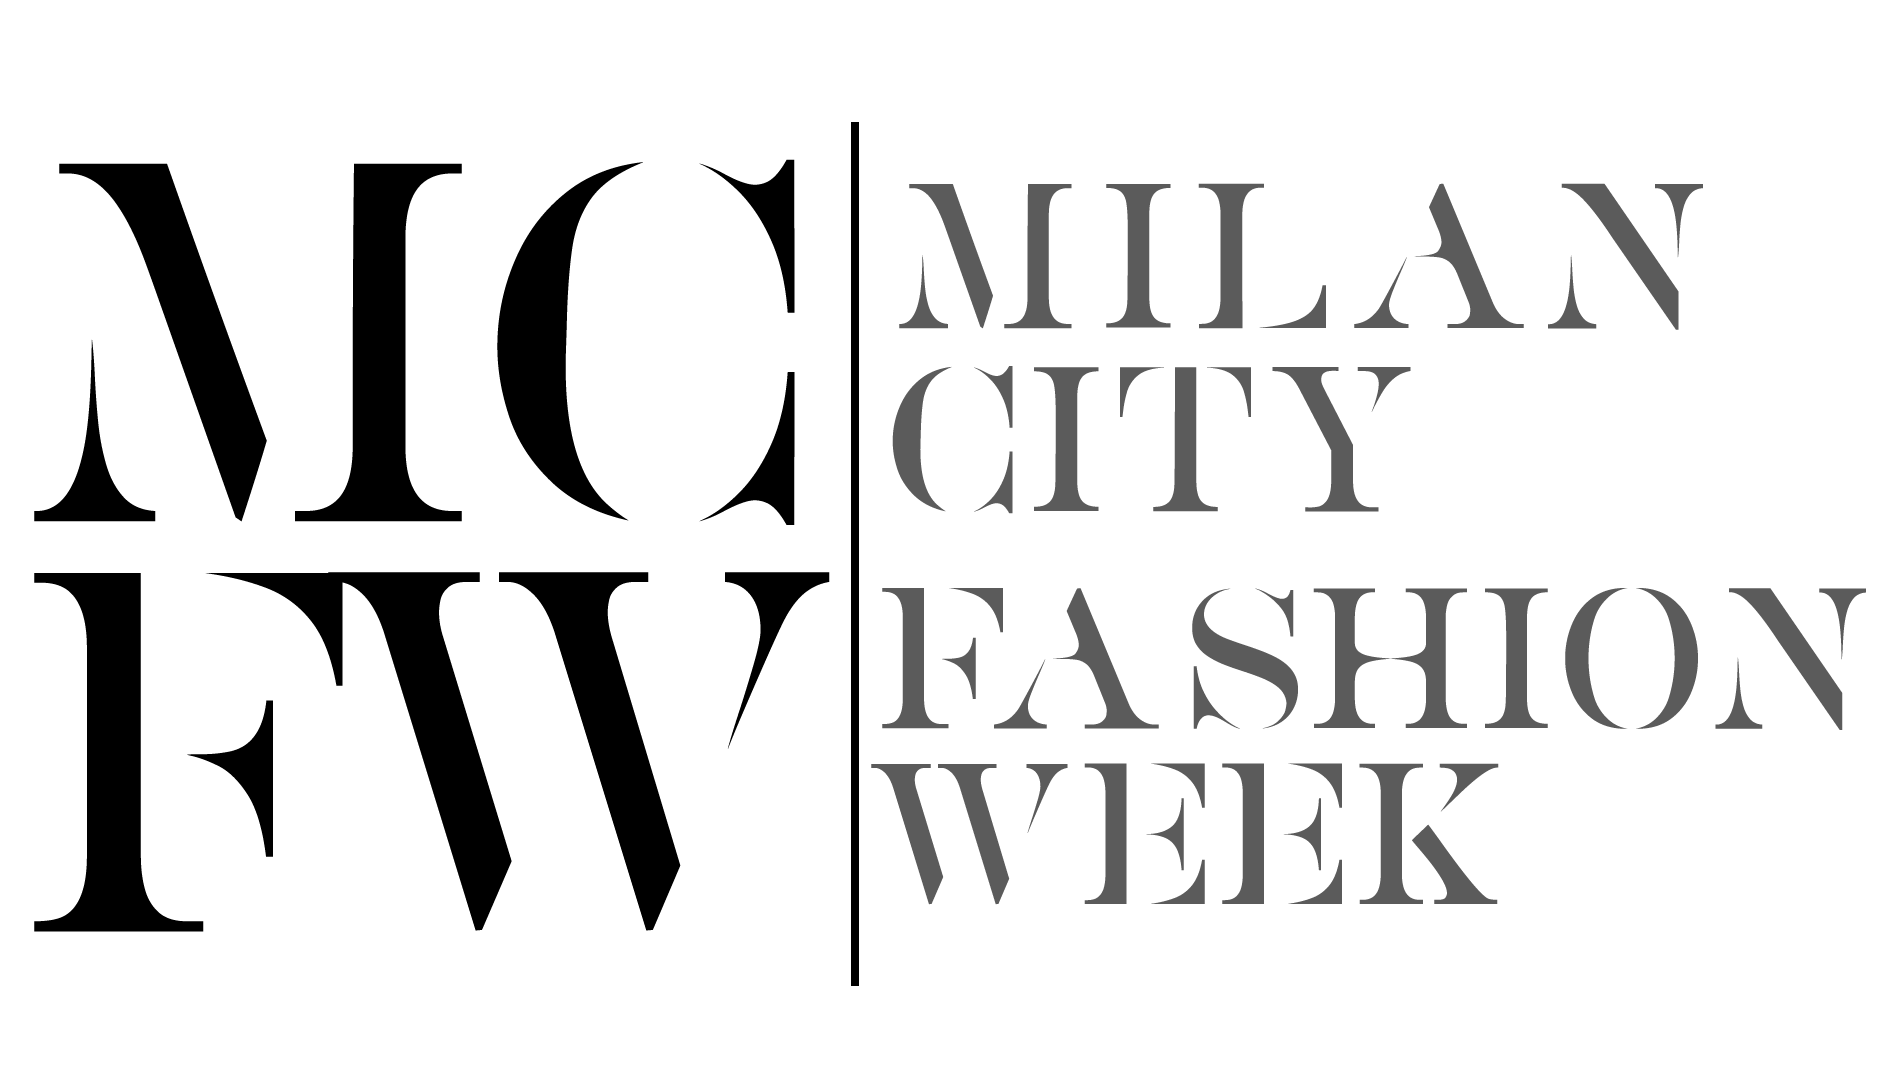 milan fashion week logo